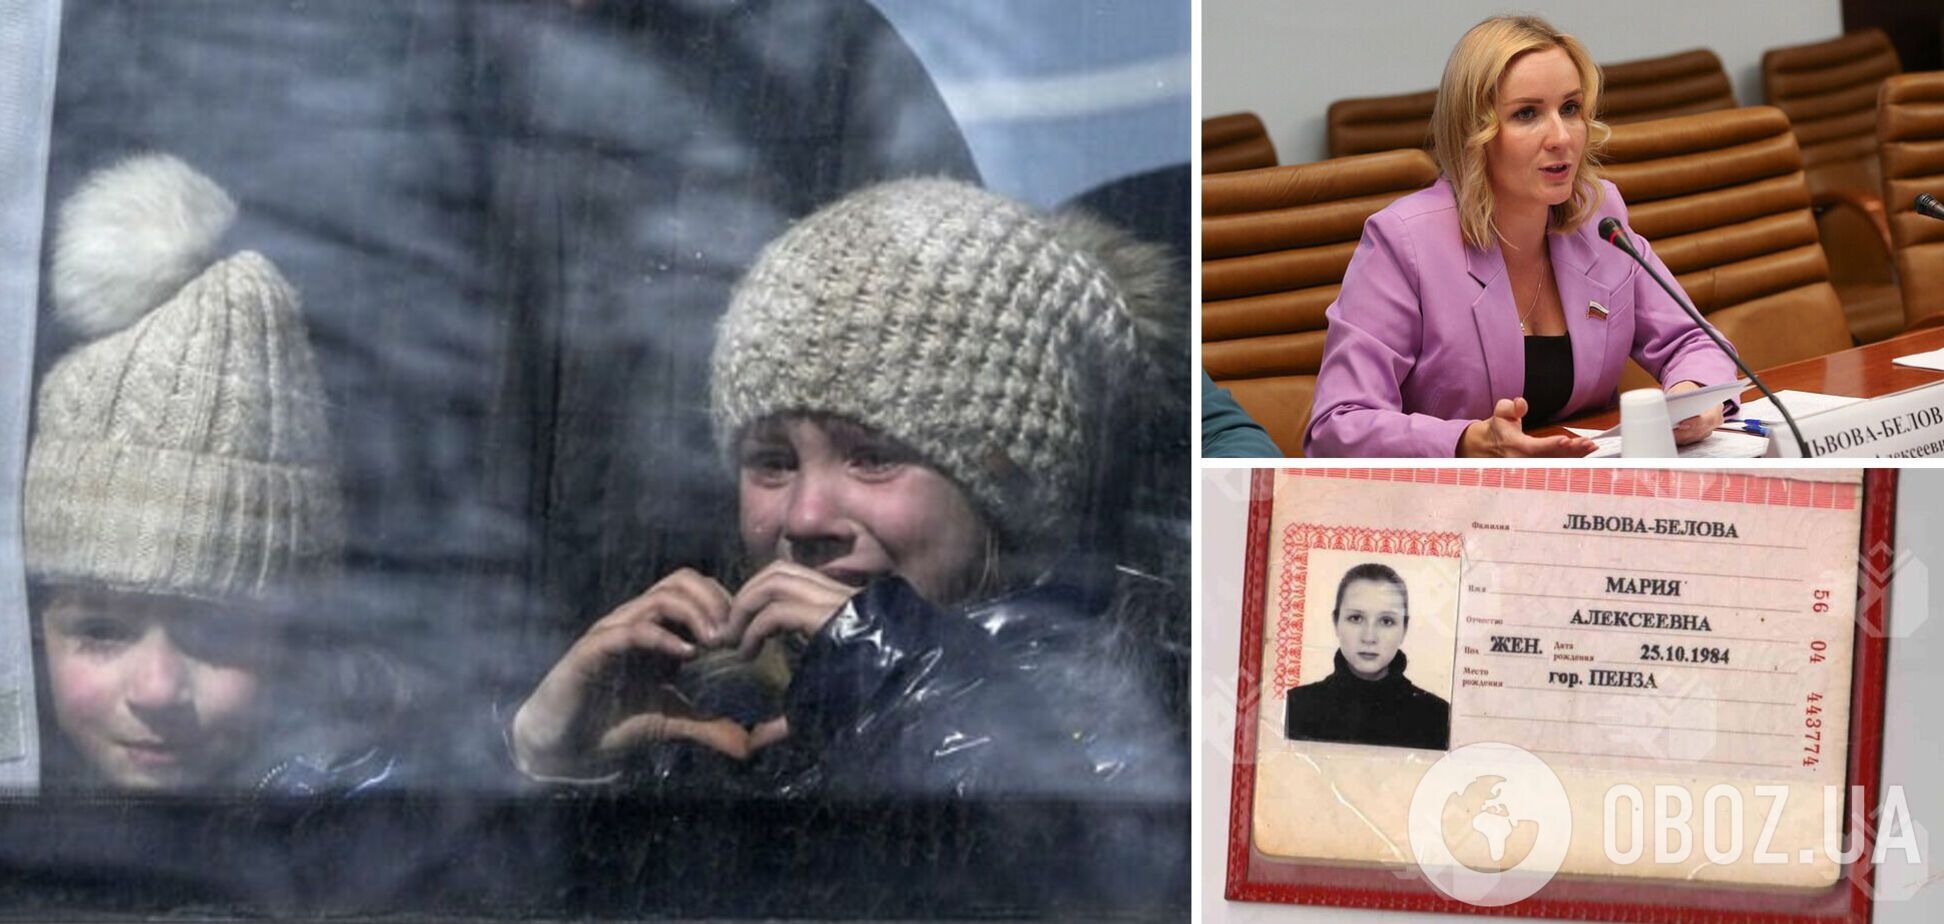 'Это будут дети России': украинский мальчик рассказал, как в РФ им 'промывали мозги' и рассказывали об усыновлении. Видео